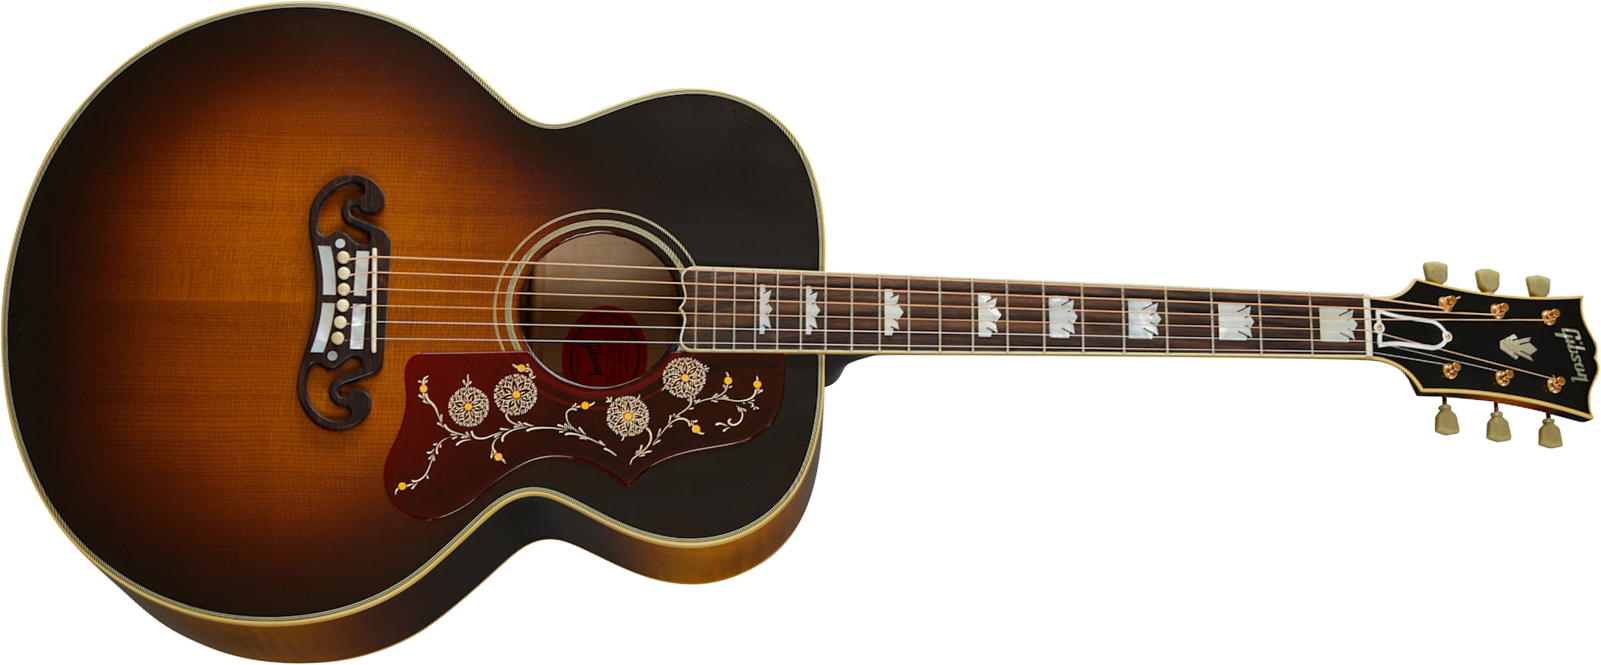 Gibson Custom Shop Sj-200 1957 Super Jumbo Epicea Erable Rw - Vos Vintage Sunburst - Guitare Acoustique - Main picture